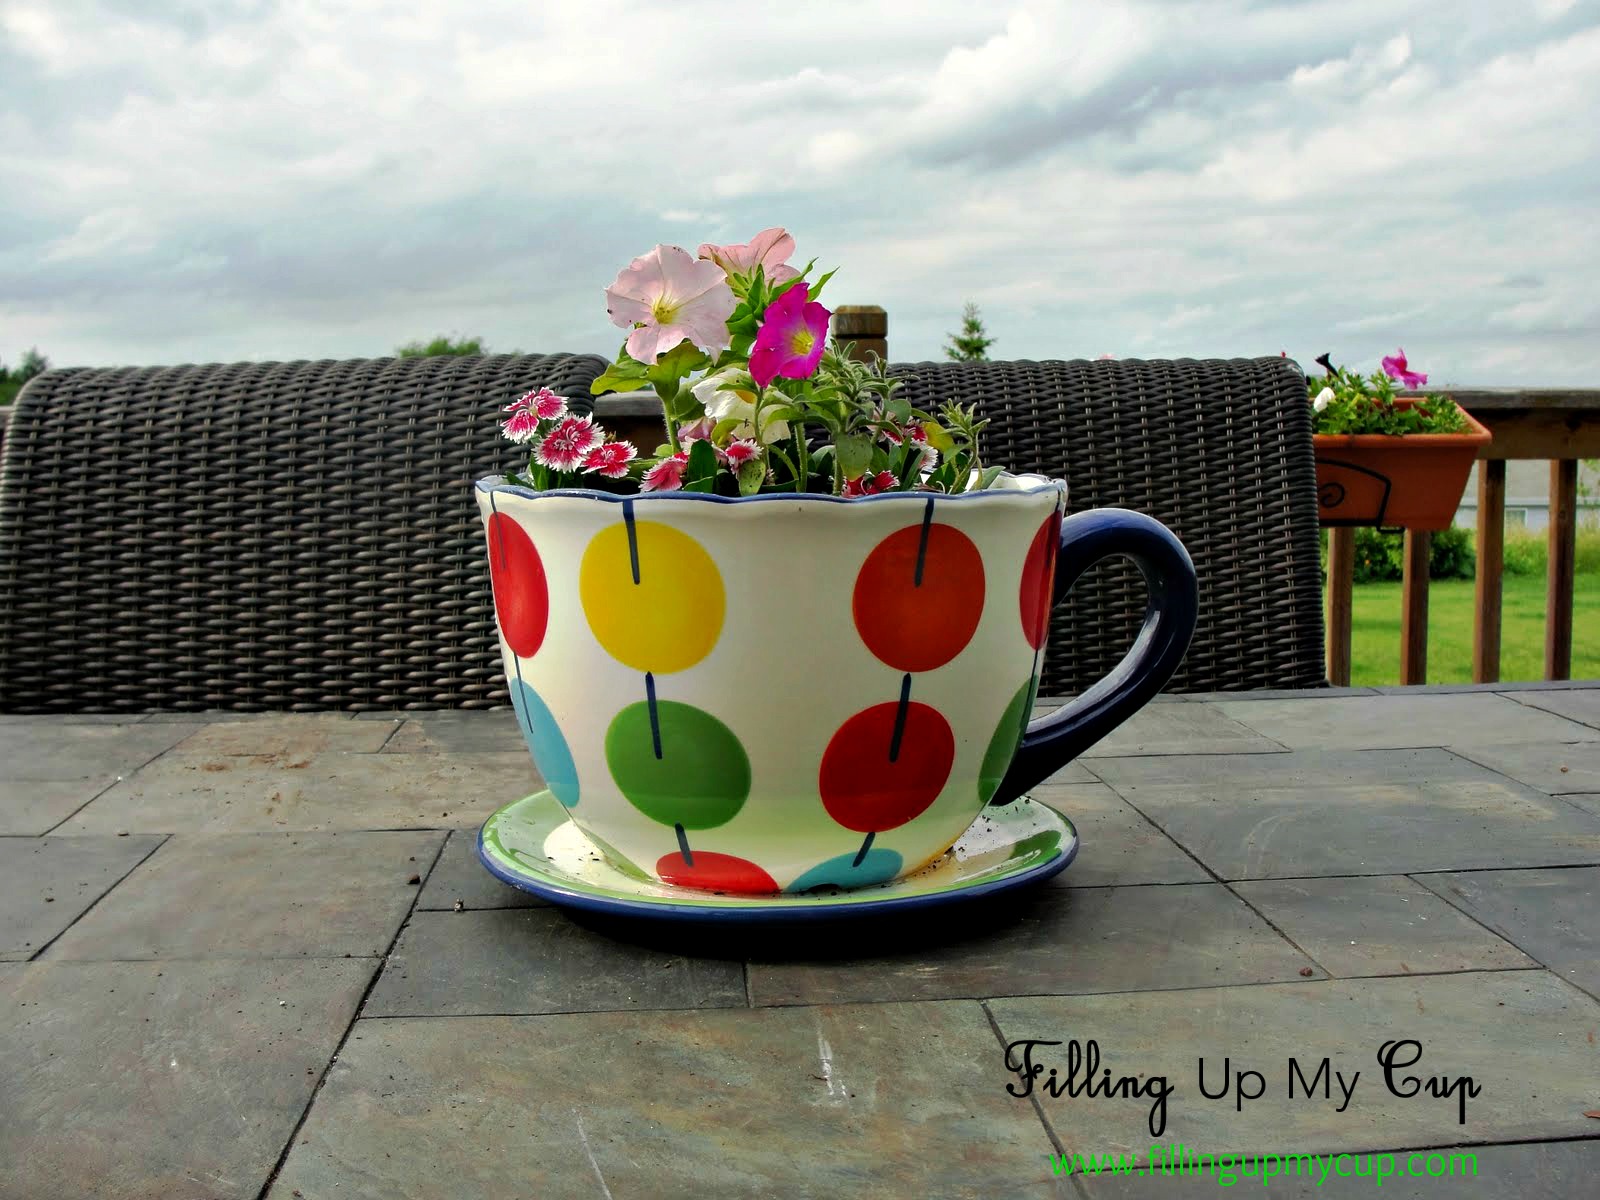 flower pot ideas pinterest Coffee Cup Flower Pot | 1600 x 1200